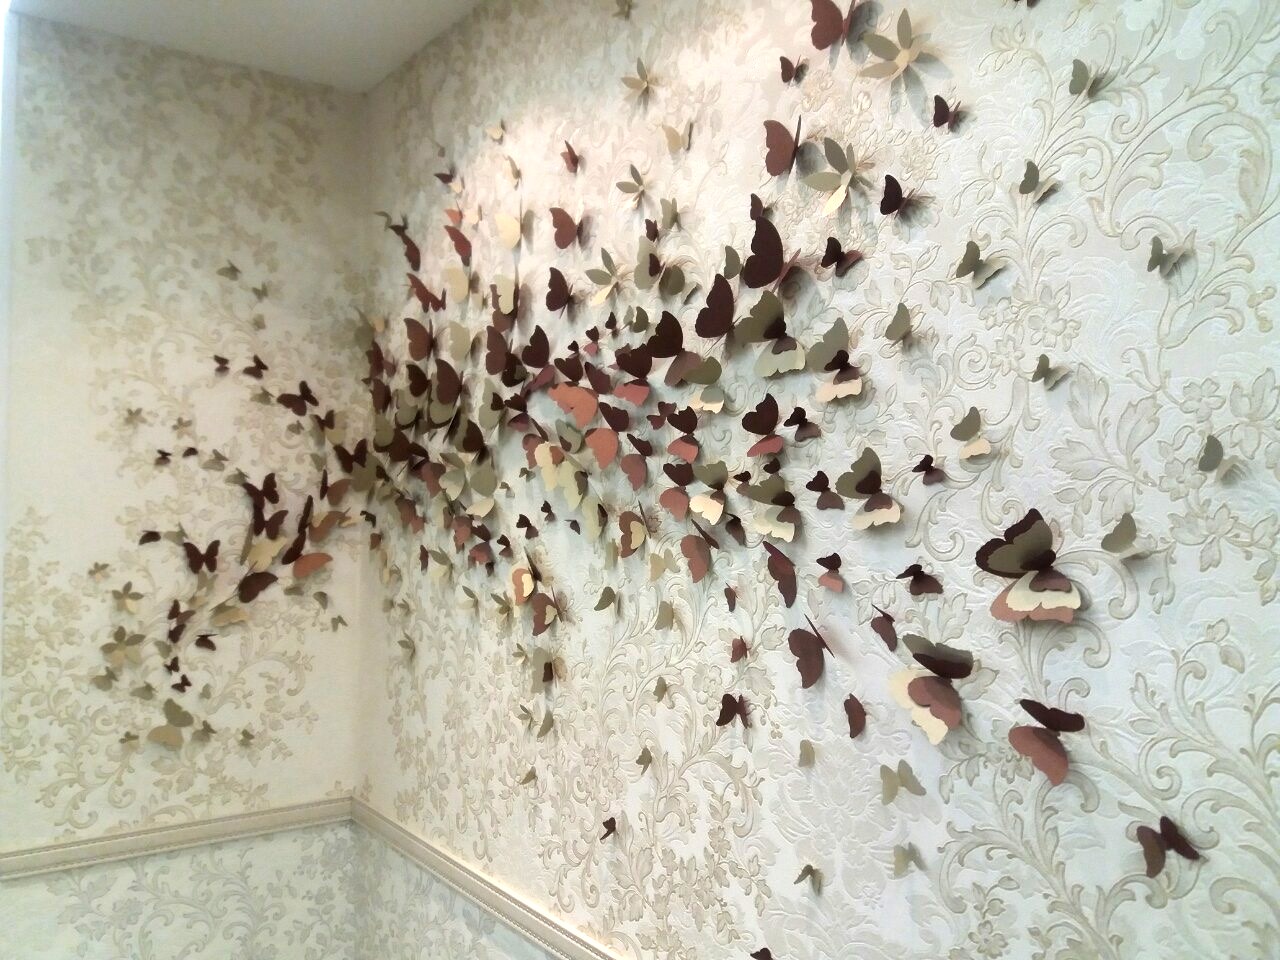 бабочки для интерьера квартиры